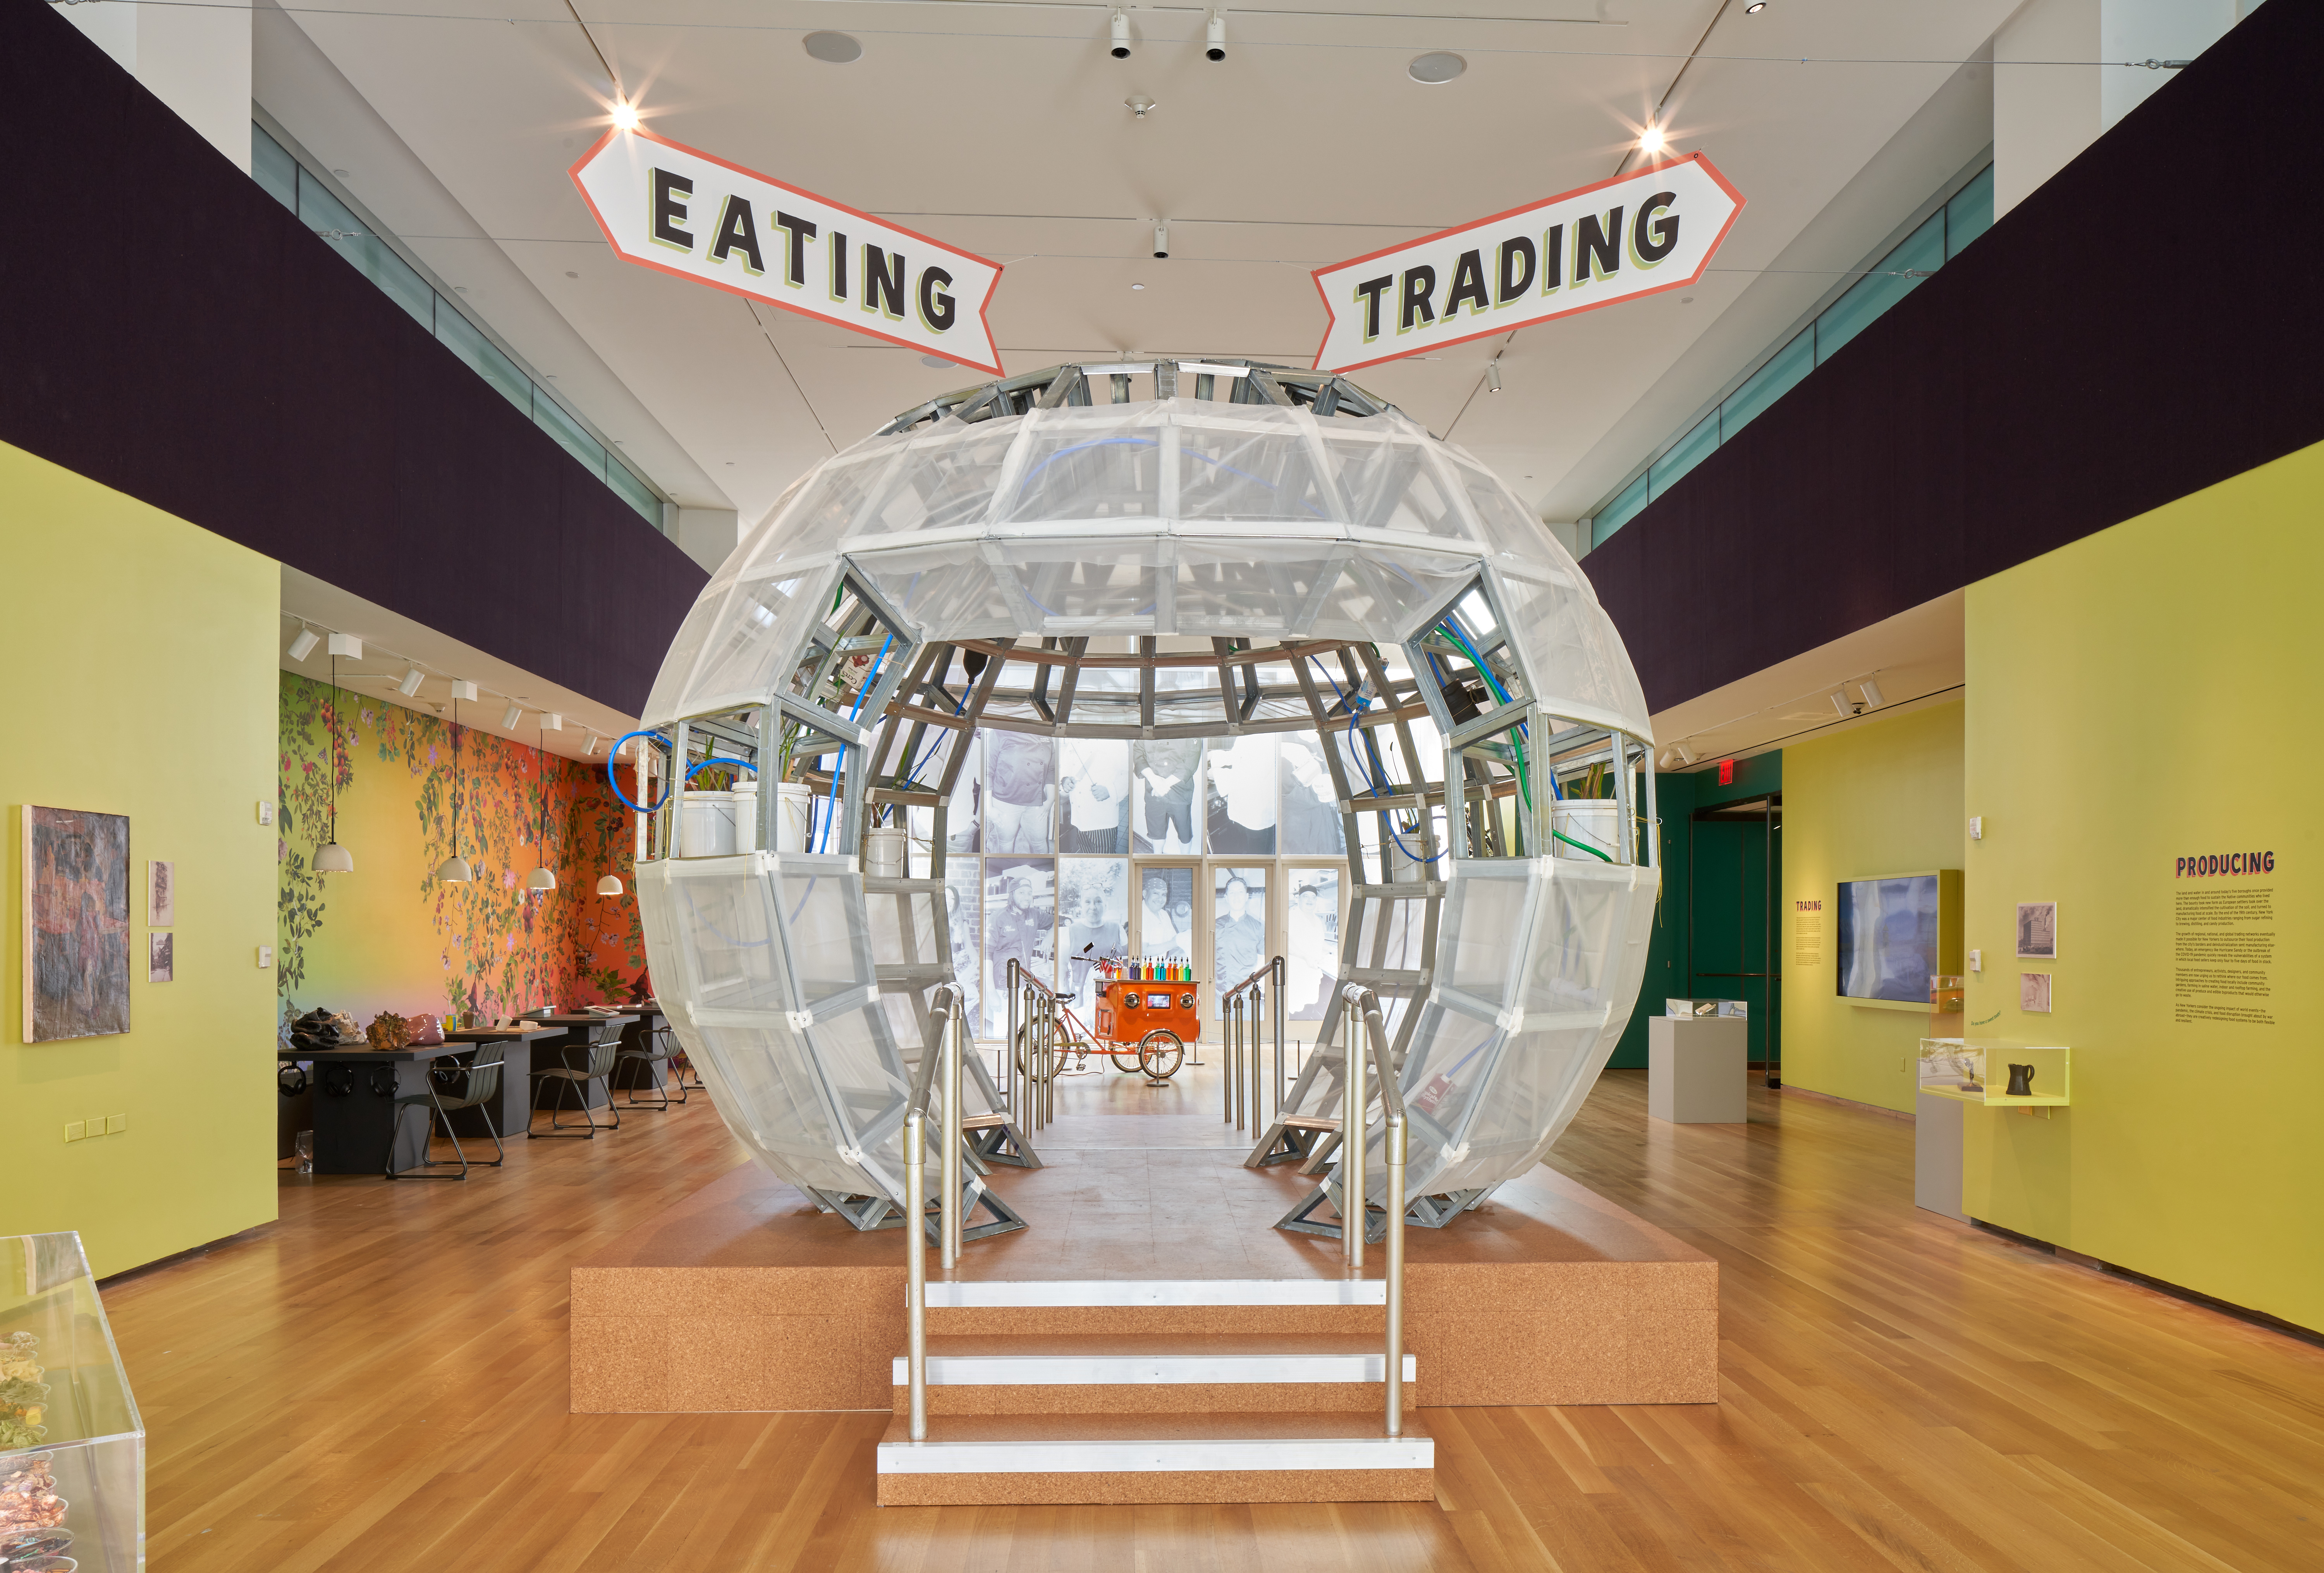 スノードームに似た大きな透明な球体が画像の中央にあり、その上に「食べる」と「取引する」という標識があります。